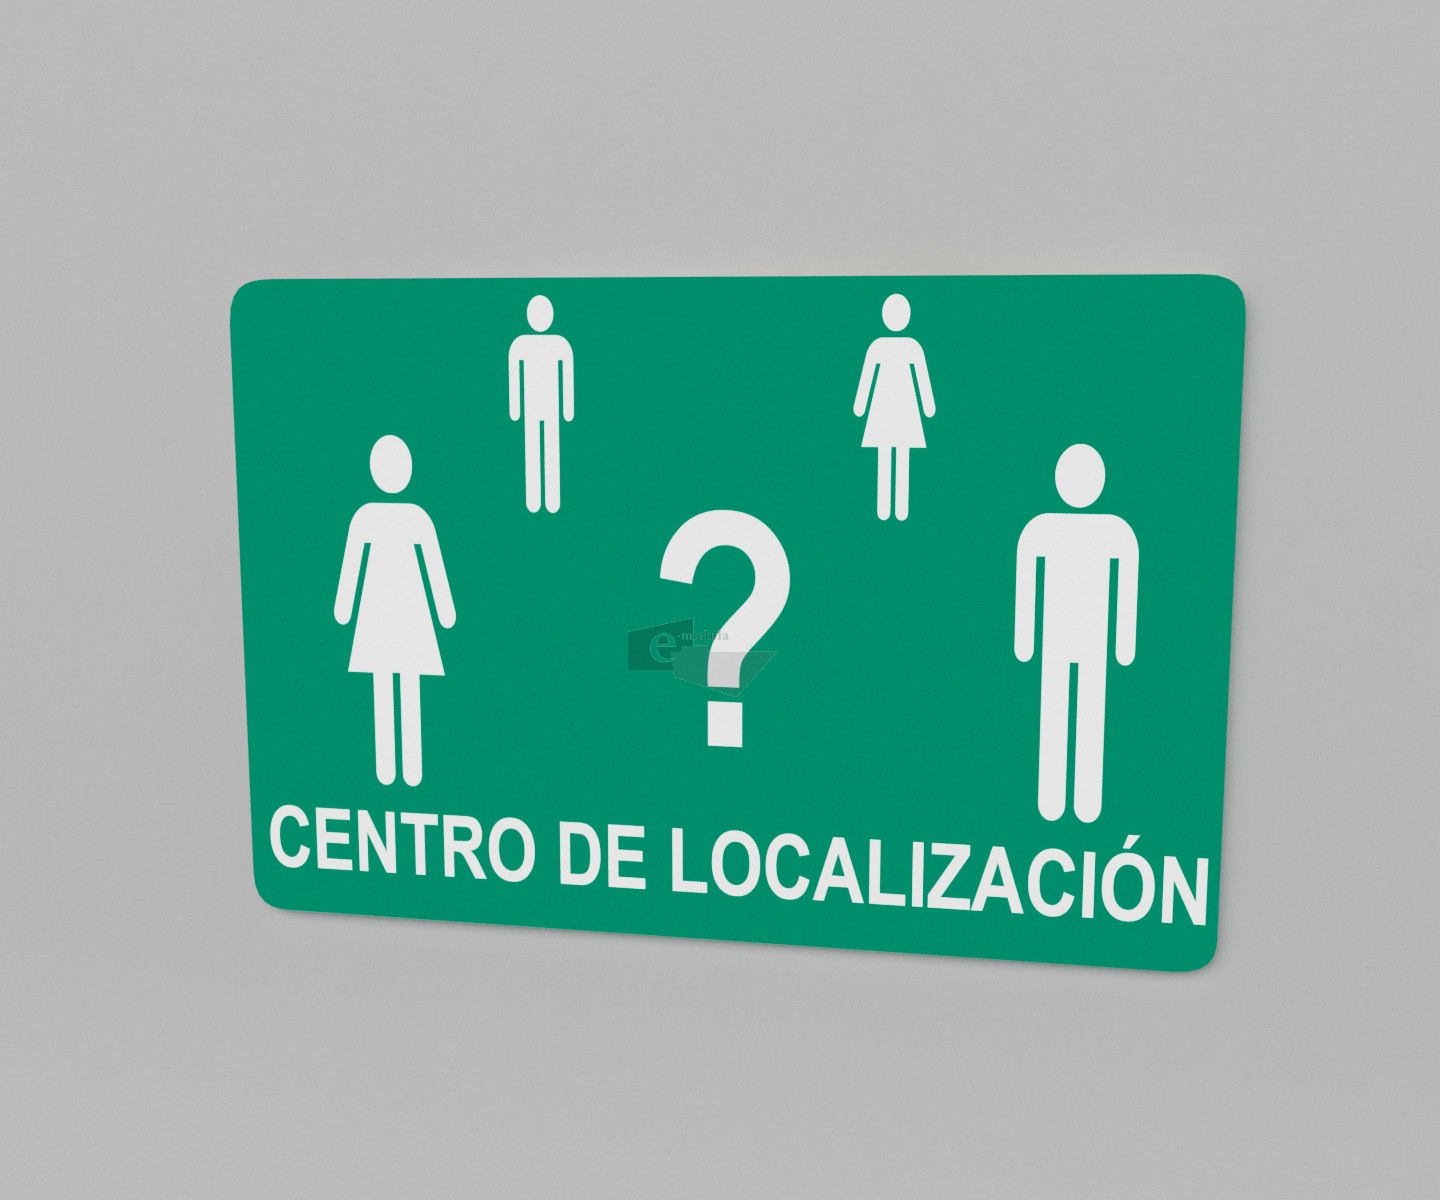 20x30cm / centro de localización / señal / letrero / protección civil / verde